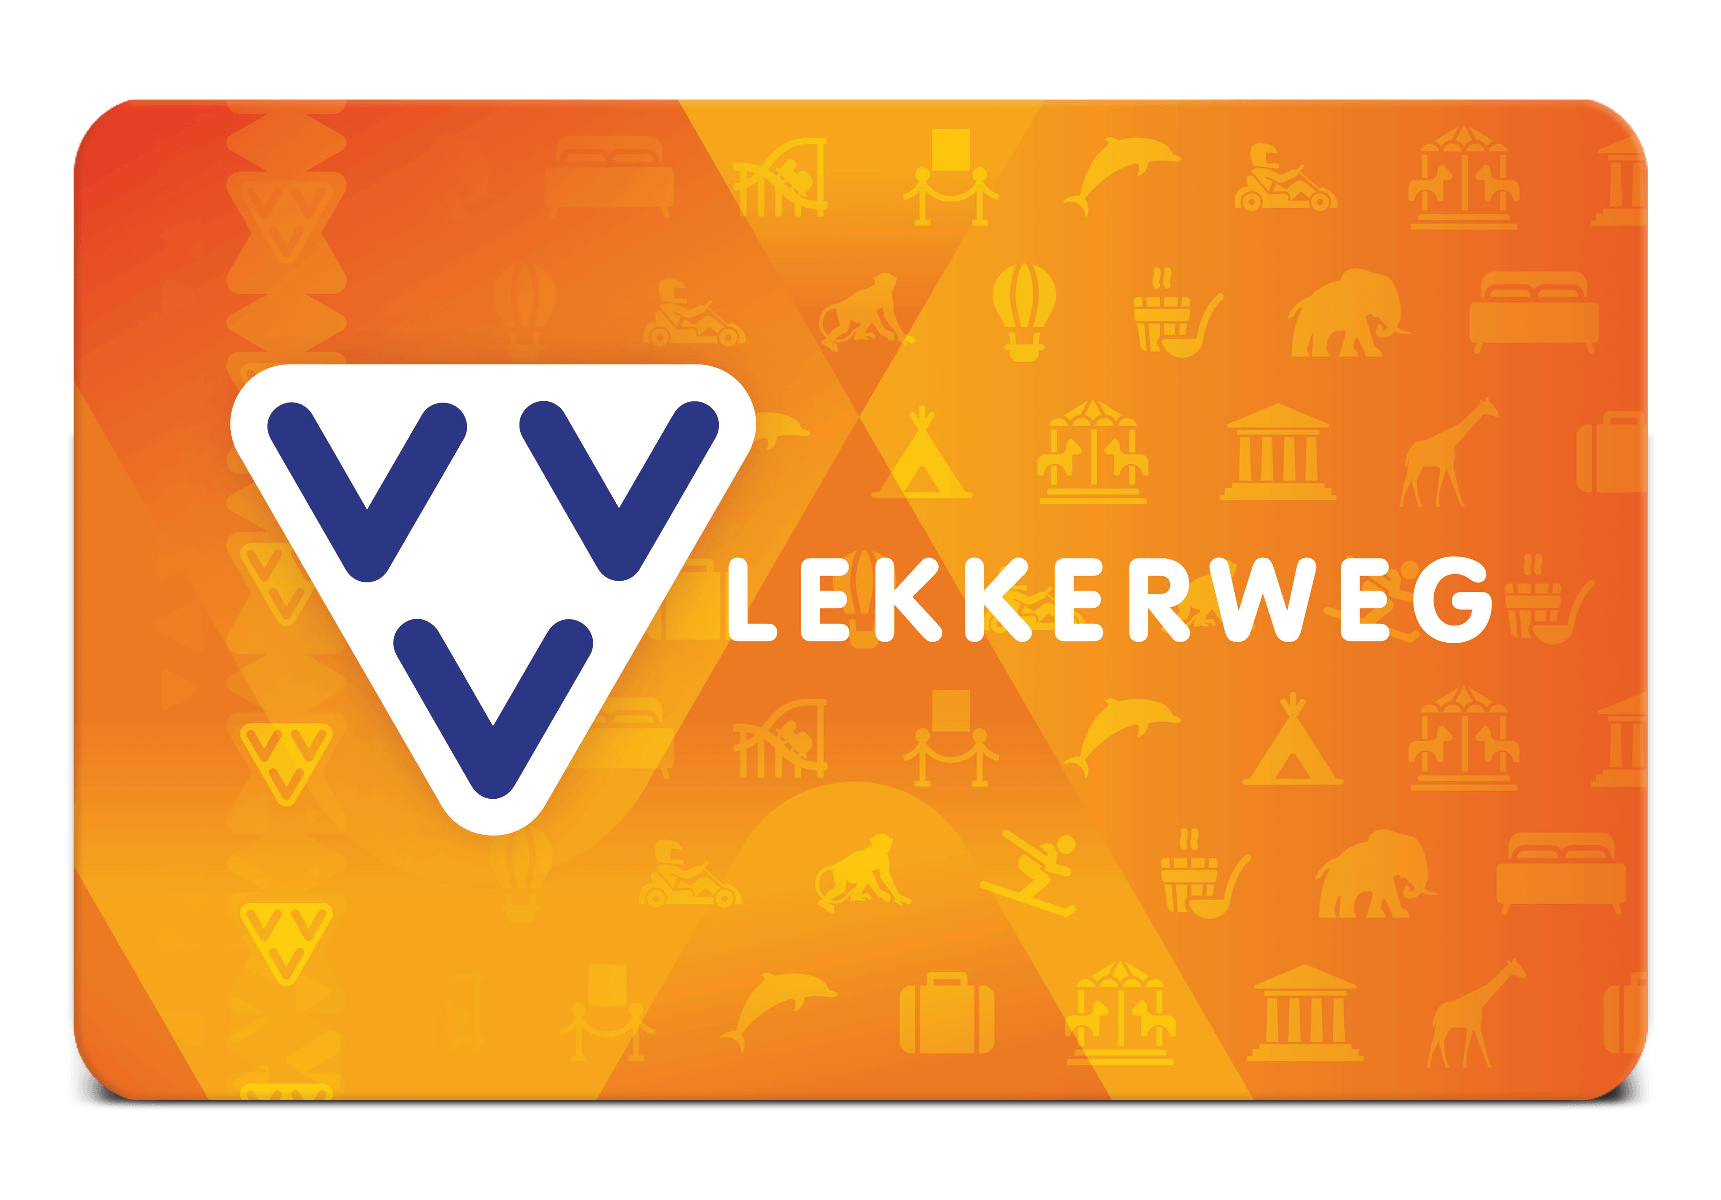 VVV Lekkerweg